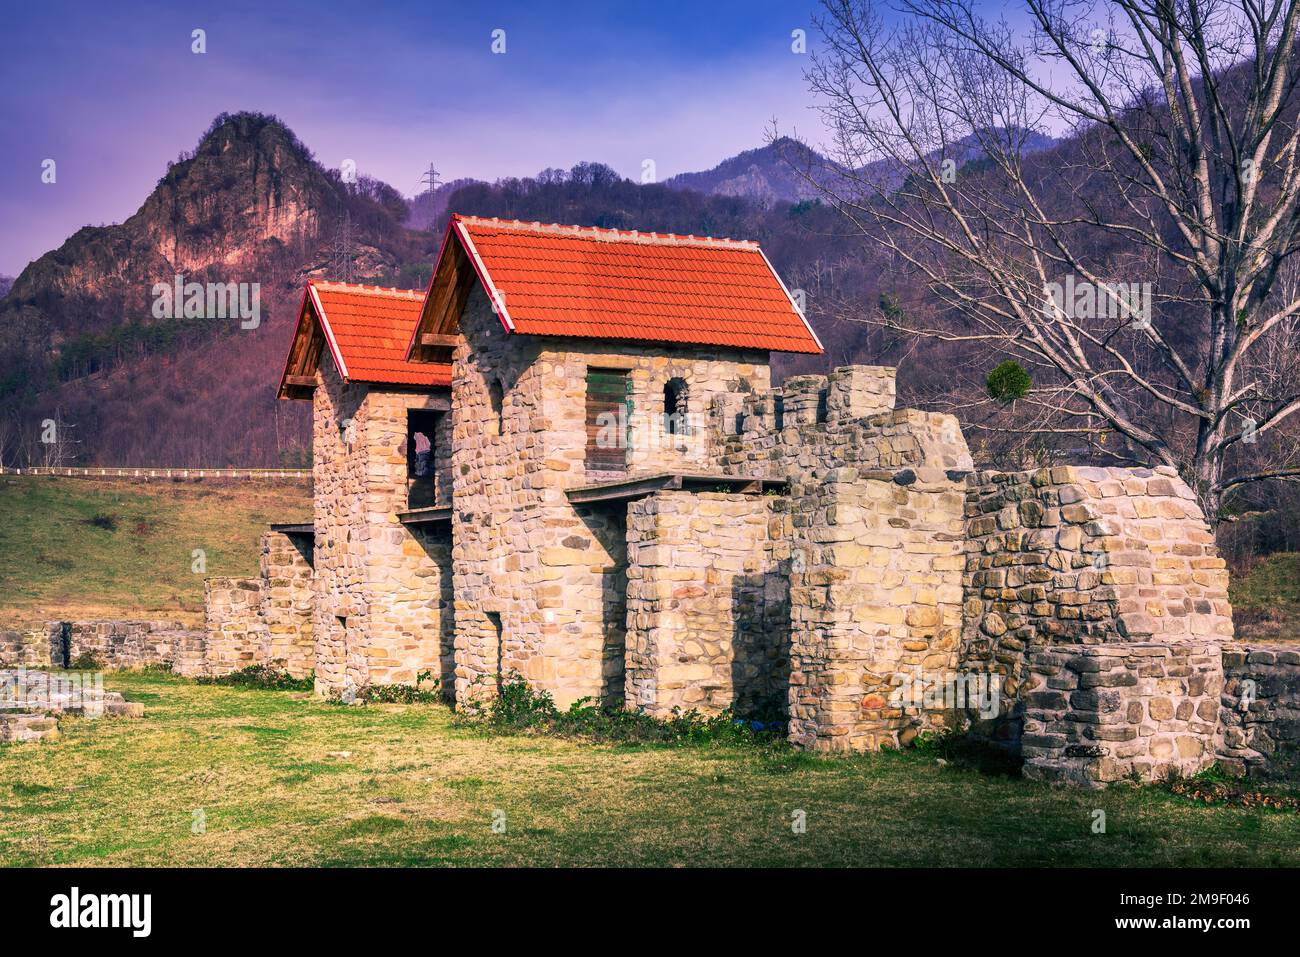 Castrum Arutela, Roumanie - ruines romaines anciennes de la province inférieure de Dacia, vallée de l'Olt près de la célèbre Cozia. Montagnes Carpathian pittoresque. Banque D'Images